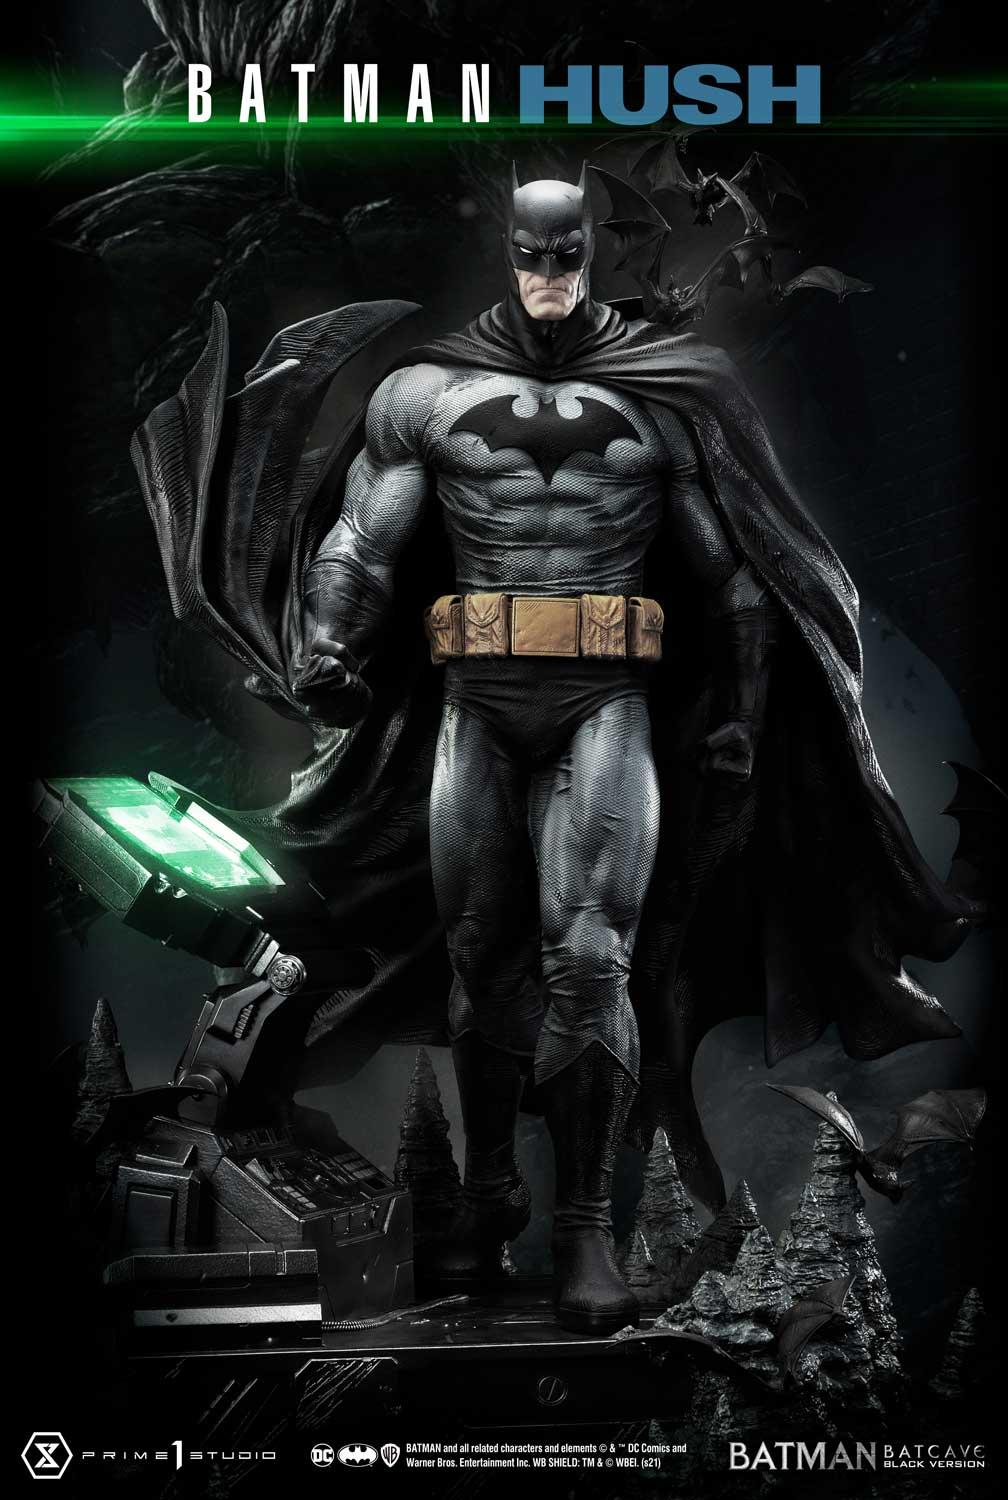 Batman Batcave (Blk) Version  Bonus